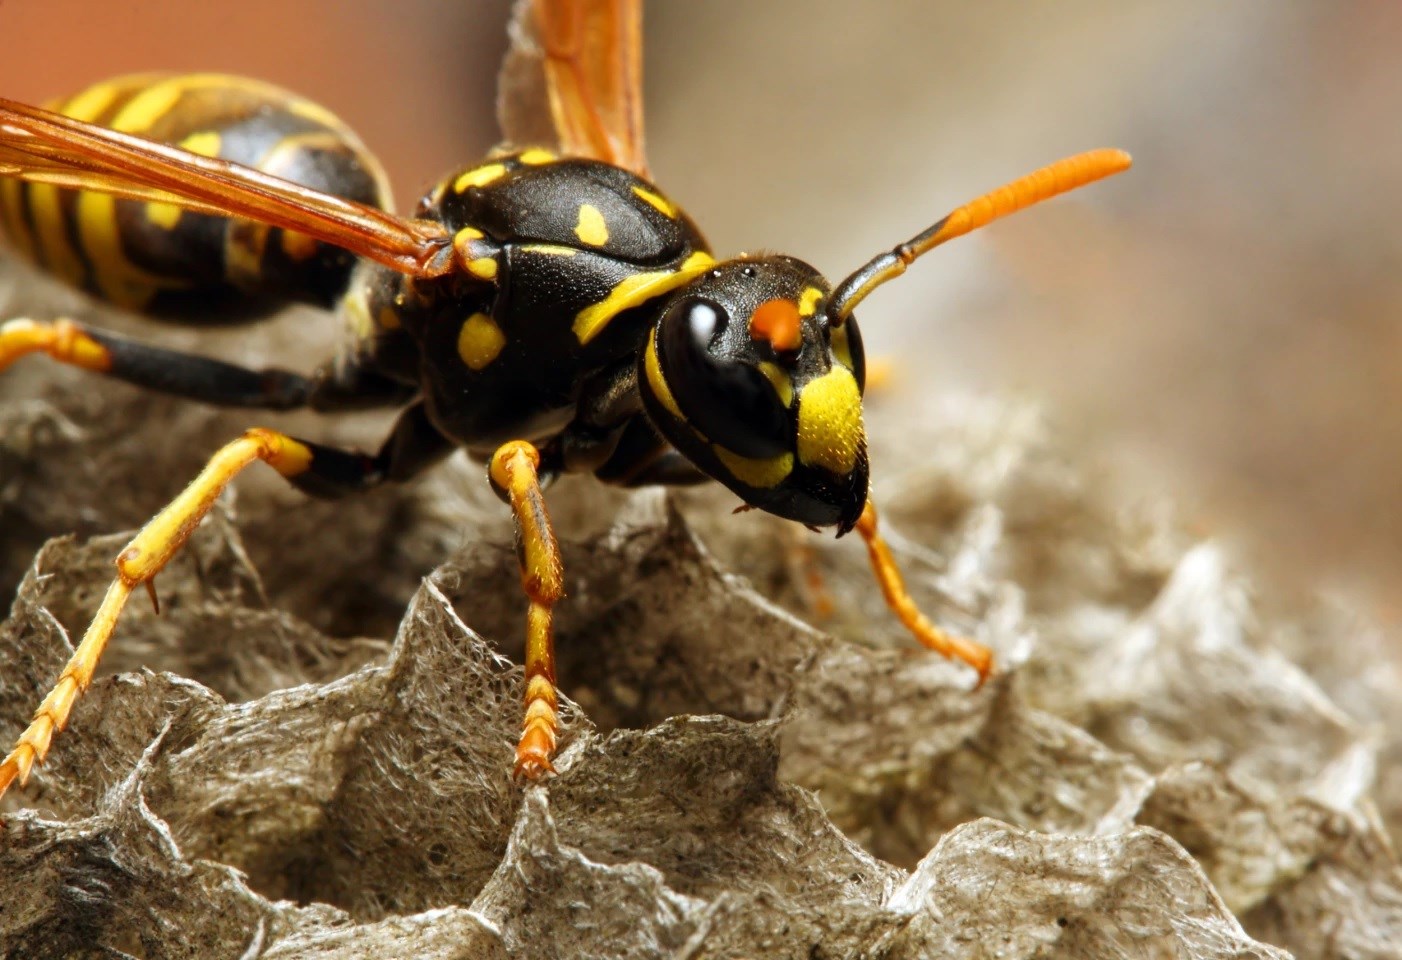 Yaban arılarından elde edilen peptid molekülü bakteri enfeksiyonlarında kullanılabilir